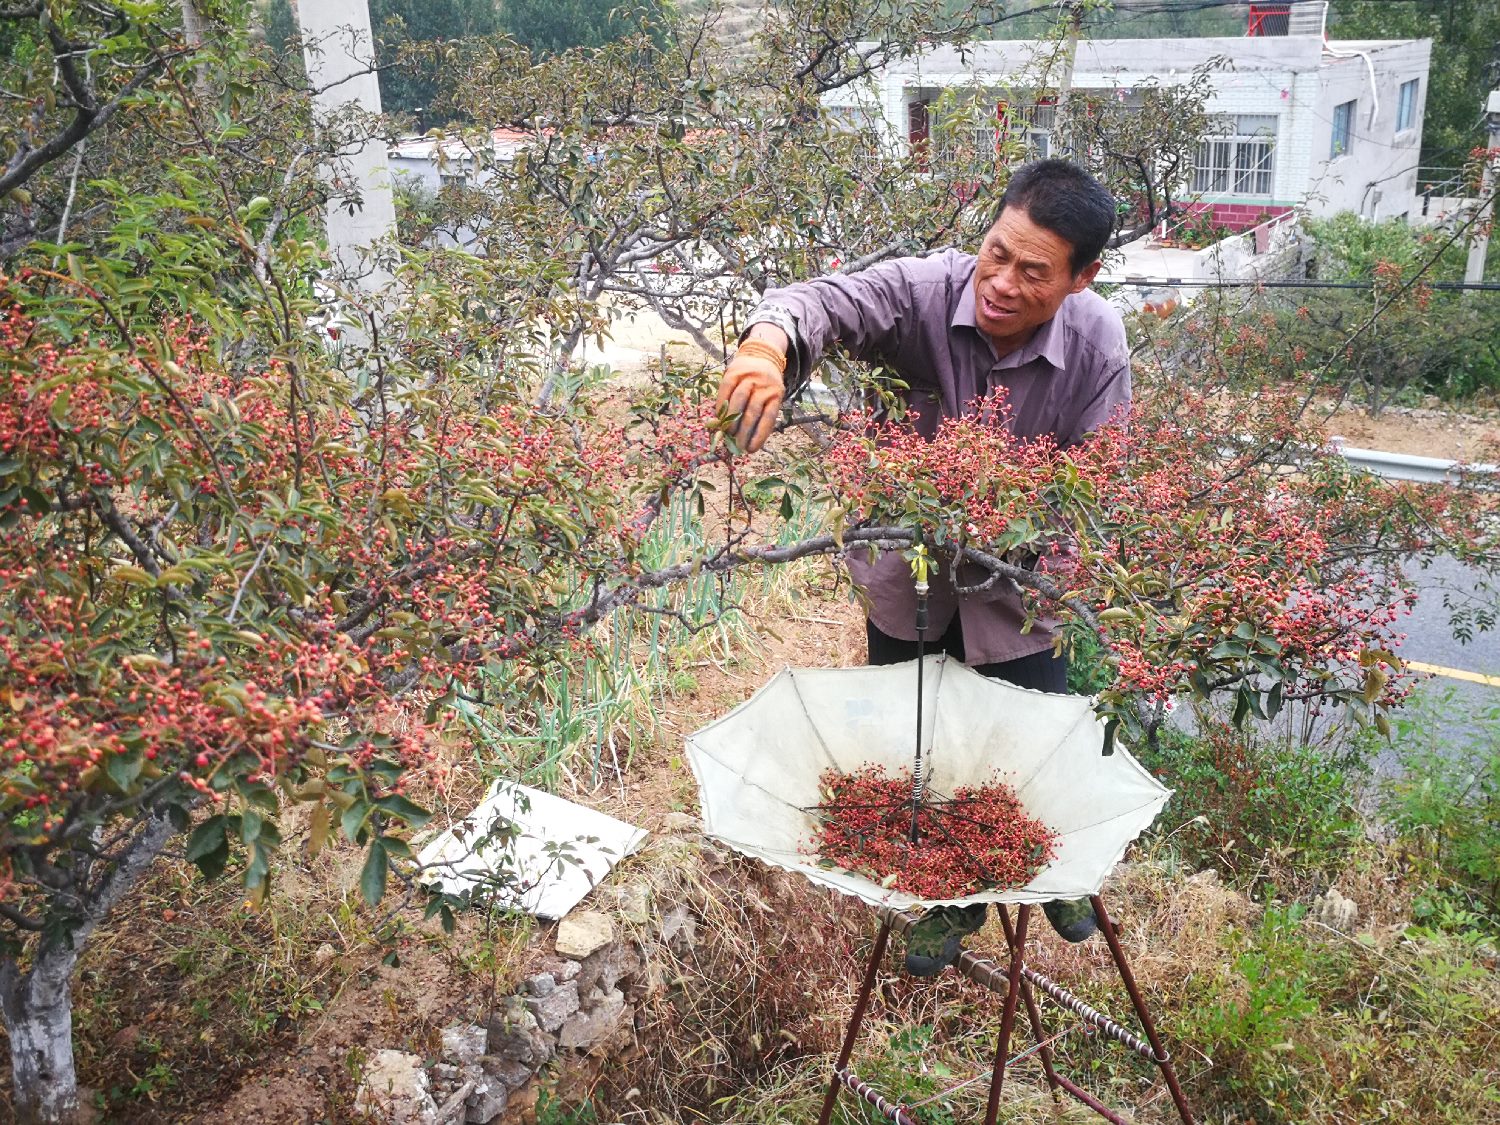 莱芜小山村,农村老伯摘花椒,400棵花椒树需要摘一个月